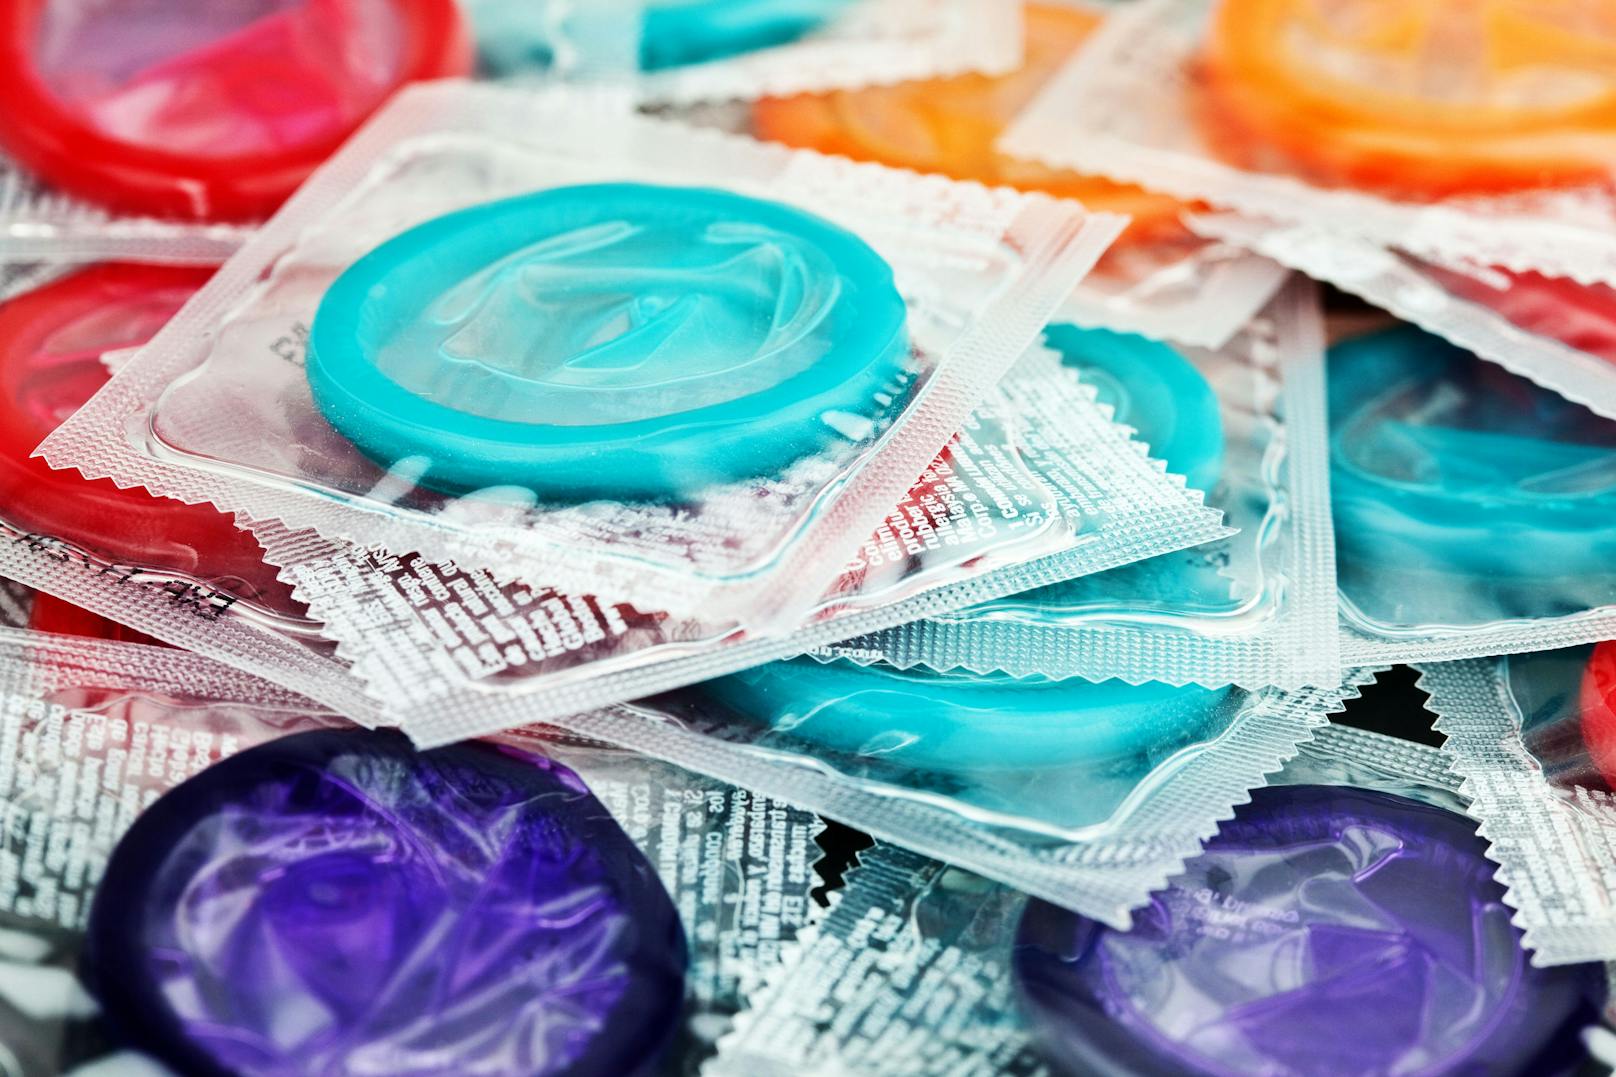 Die Polizei steht bei ihren Ermittlungen zum Kondom-Absender noch ganz am Anfang. 